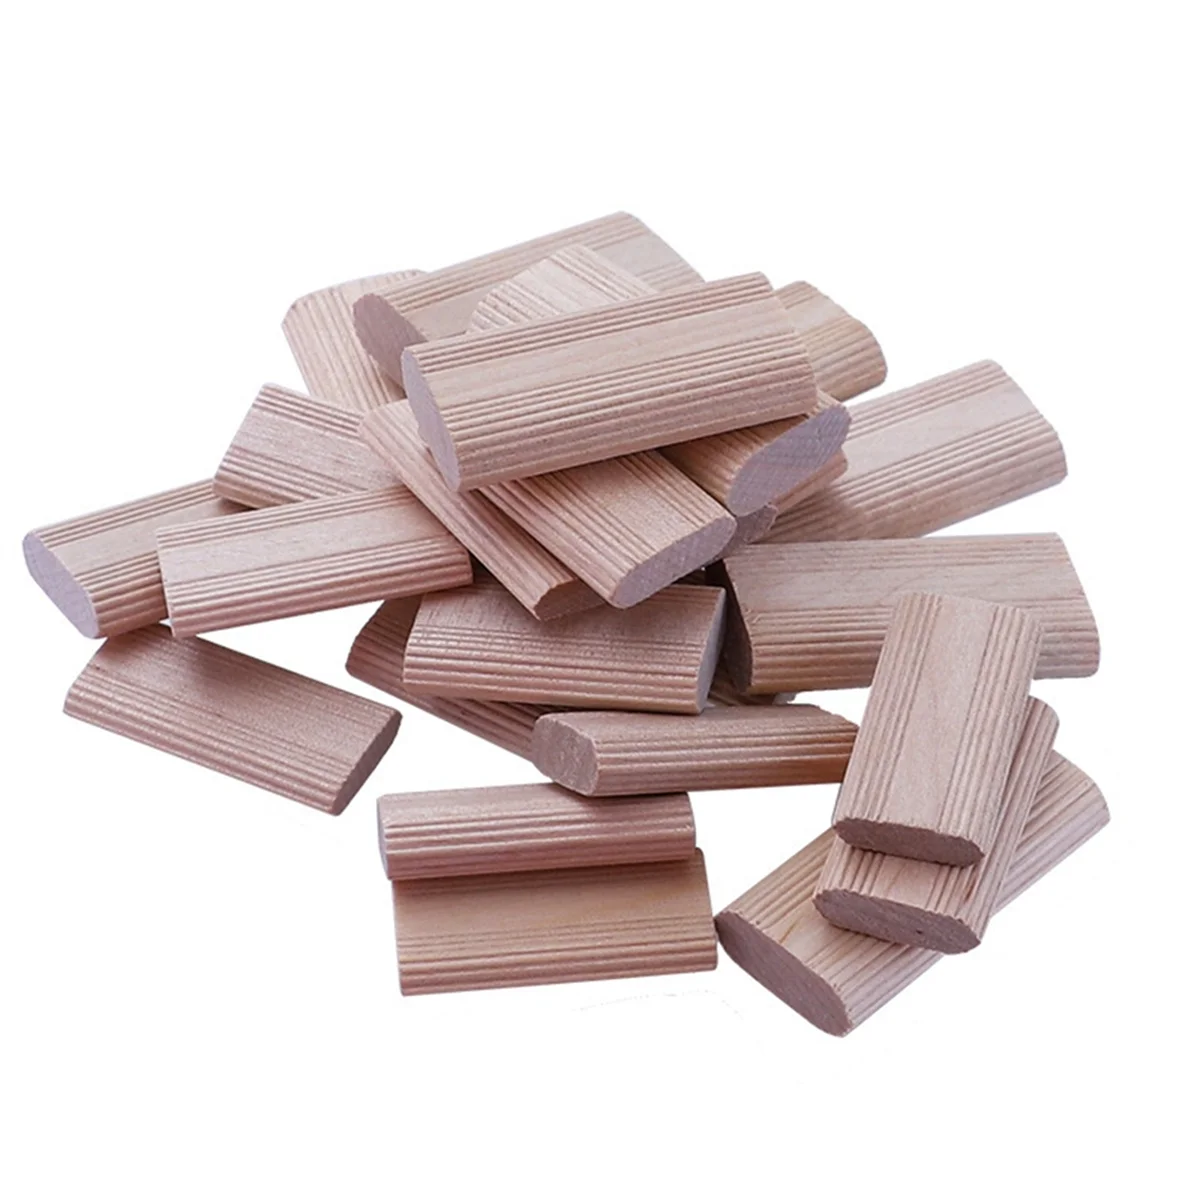 50 броя 6mm домино дървени дюбели конектори, букови дървени щепсели, дървообработващи мебелни съединители